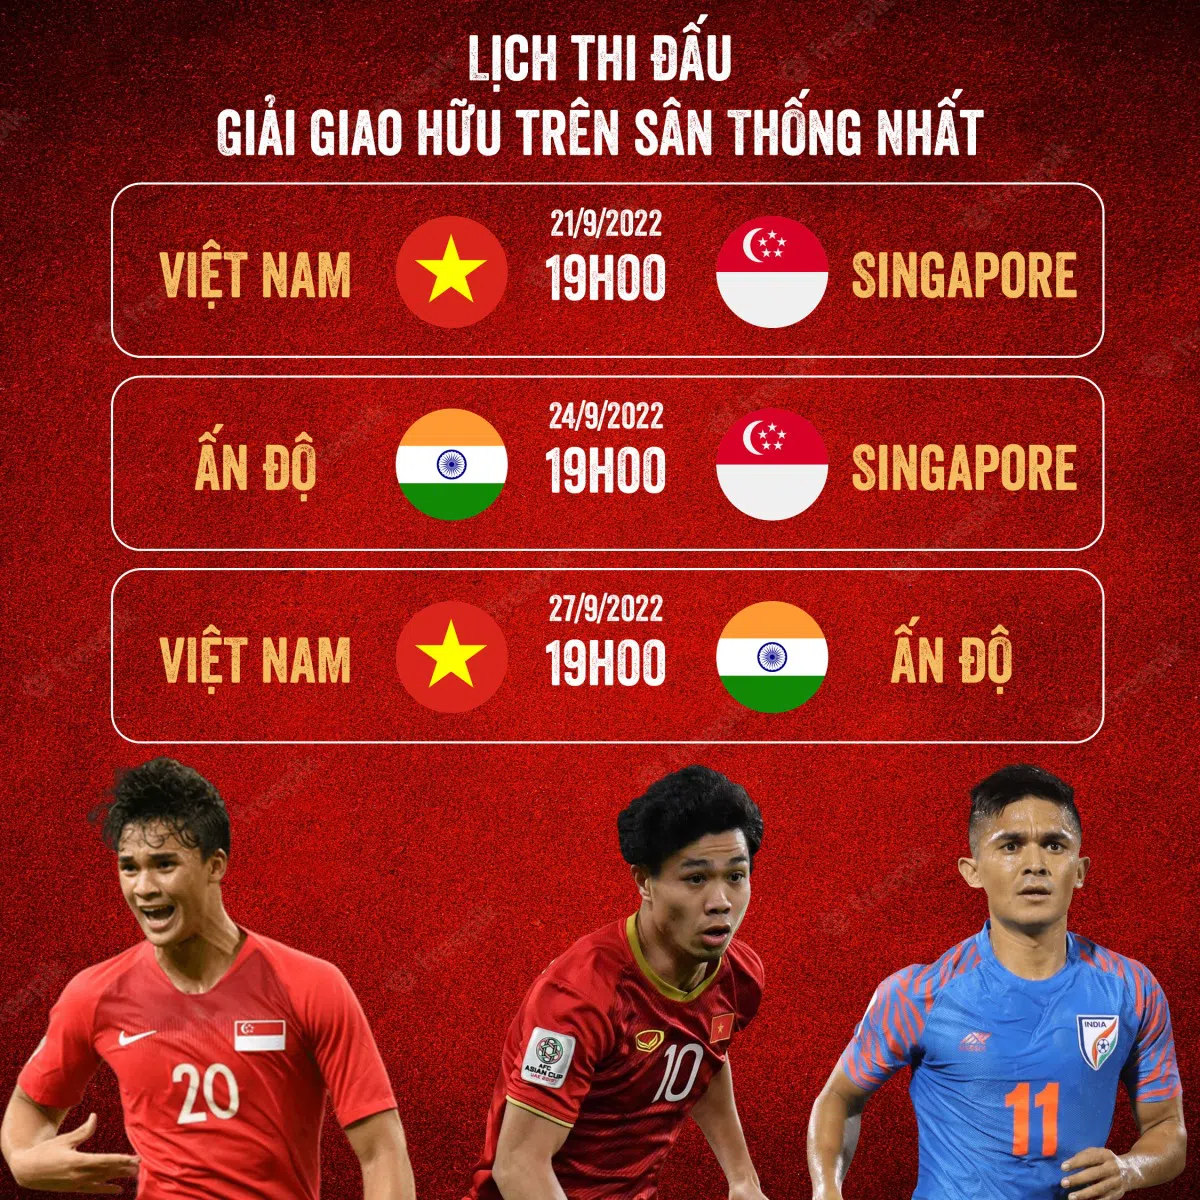 HLV tuyển Ấn Độ muốn giành chức vô địch, ấn tượng với một cầu thủ Việt Nam